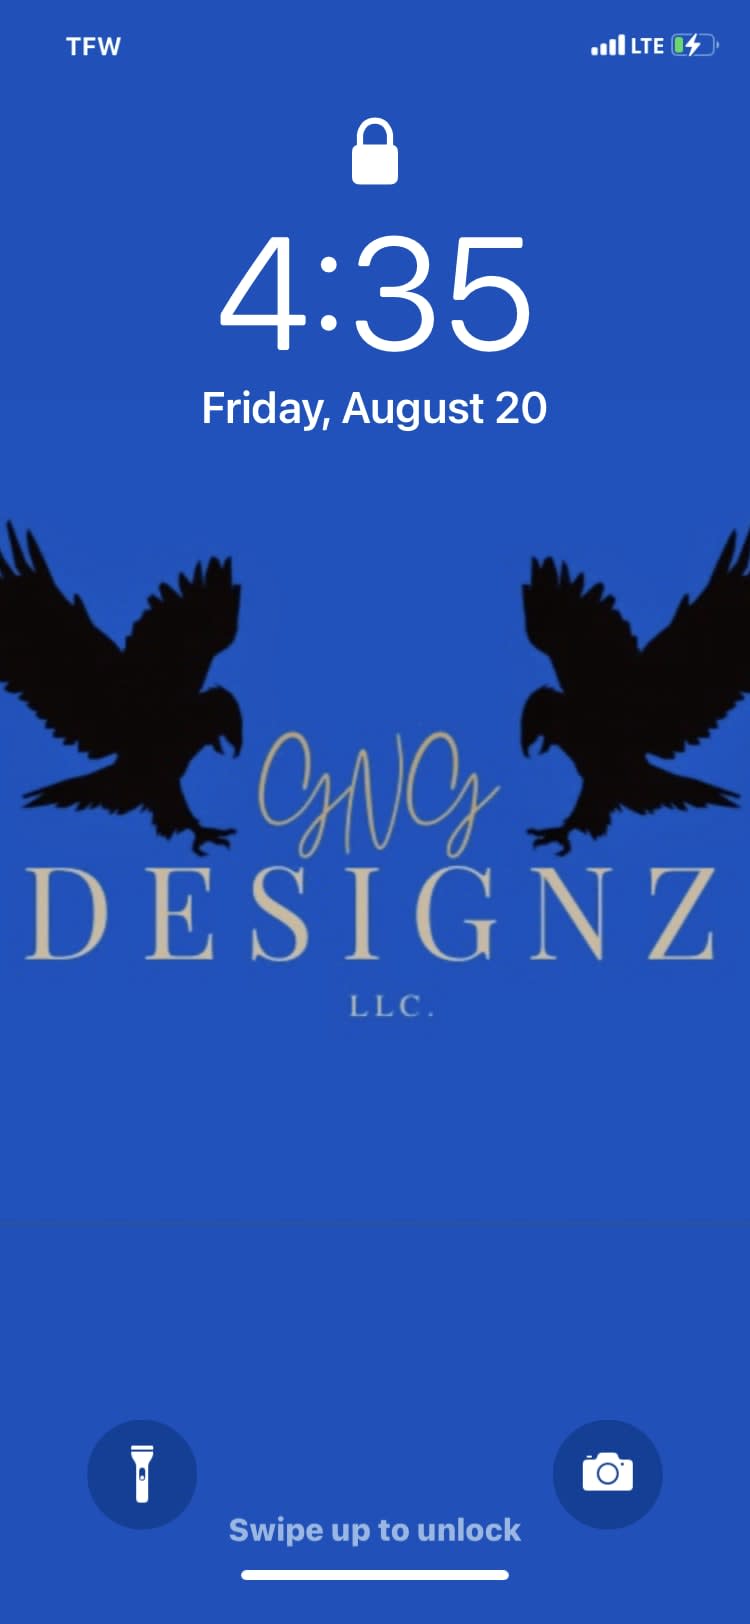 GNG DesignZ LLC.